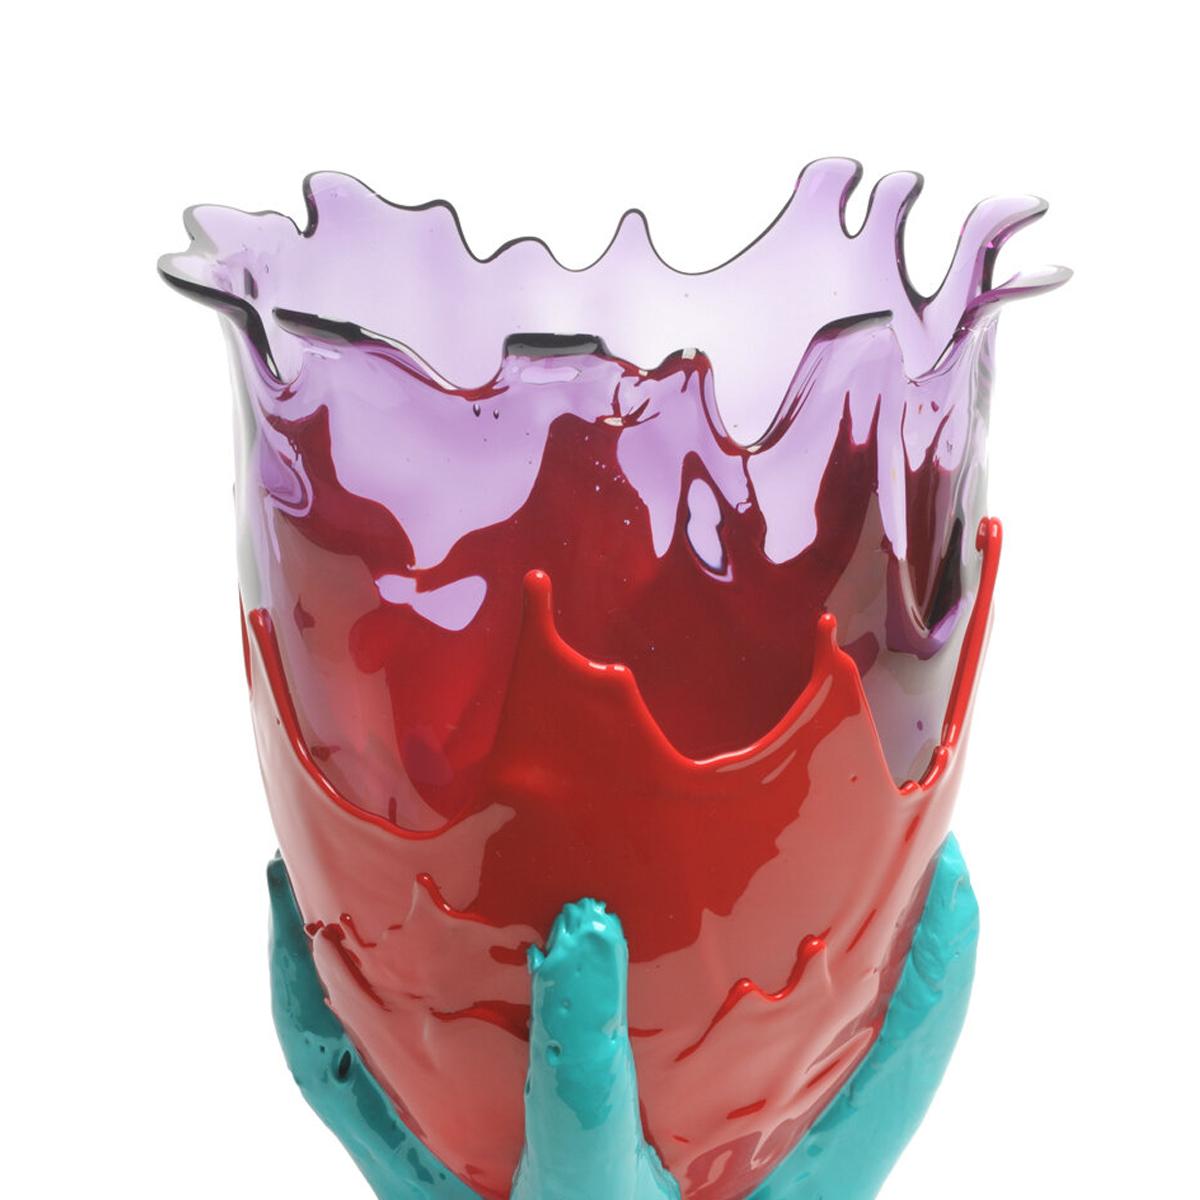 Vase transparent de couleur supplémentaire - lilas transparent, rouge mat, turquoise mat.

Vase en résine souple conçu par Gaetano Pesce en 1995 pour la collection Fish Design.

Mesures : XL Ø 30cm x H 56cm
Couleurs : lilas clair, rouge mat,